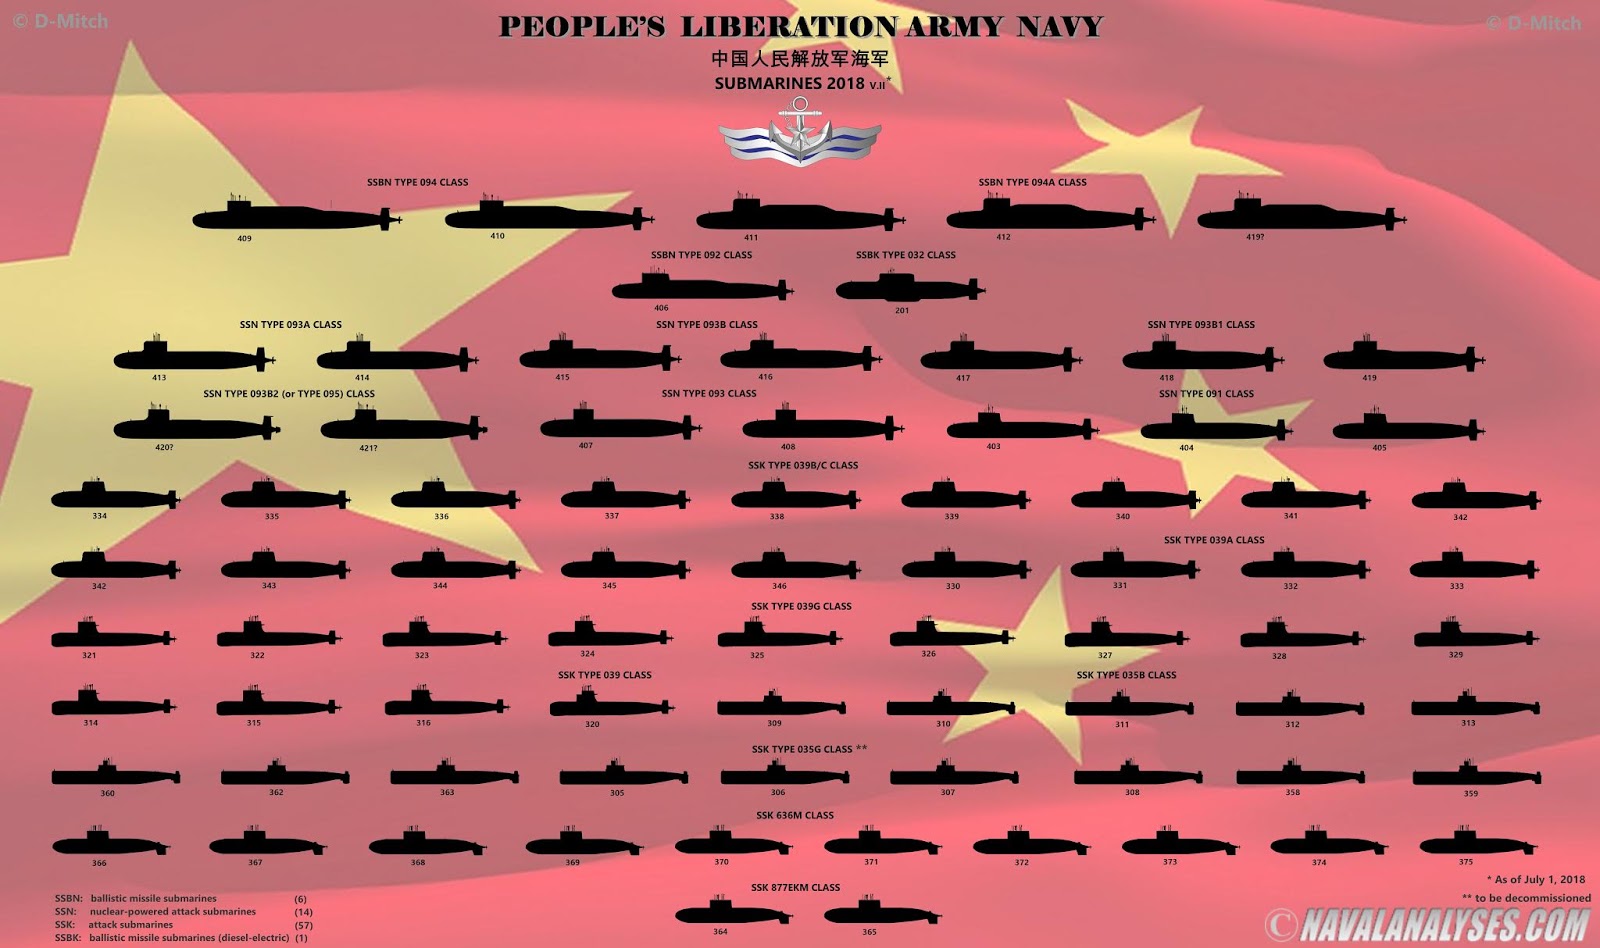 Боевой подводный флот 